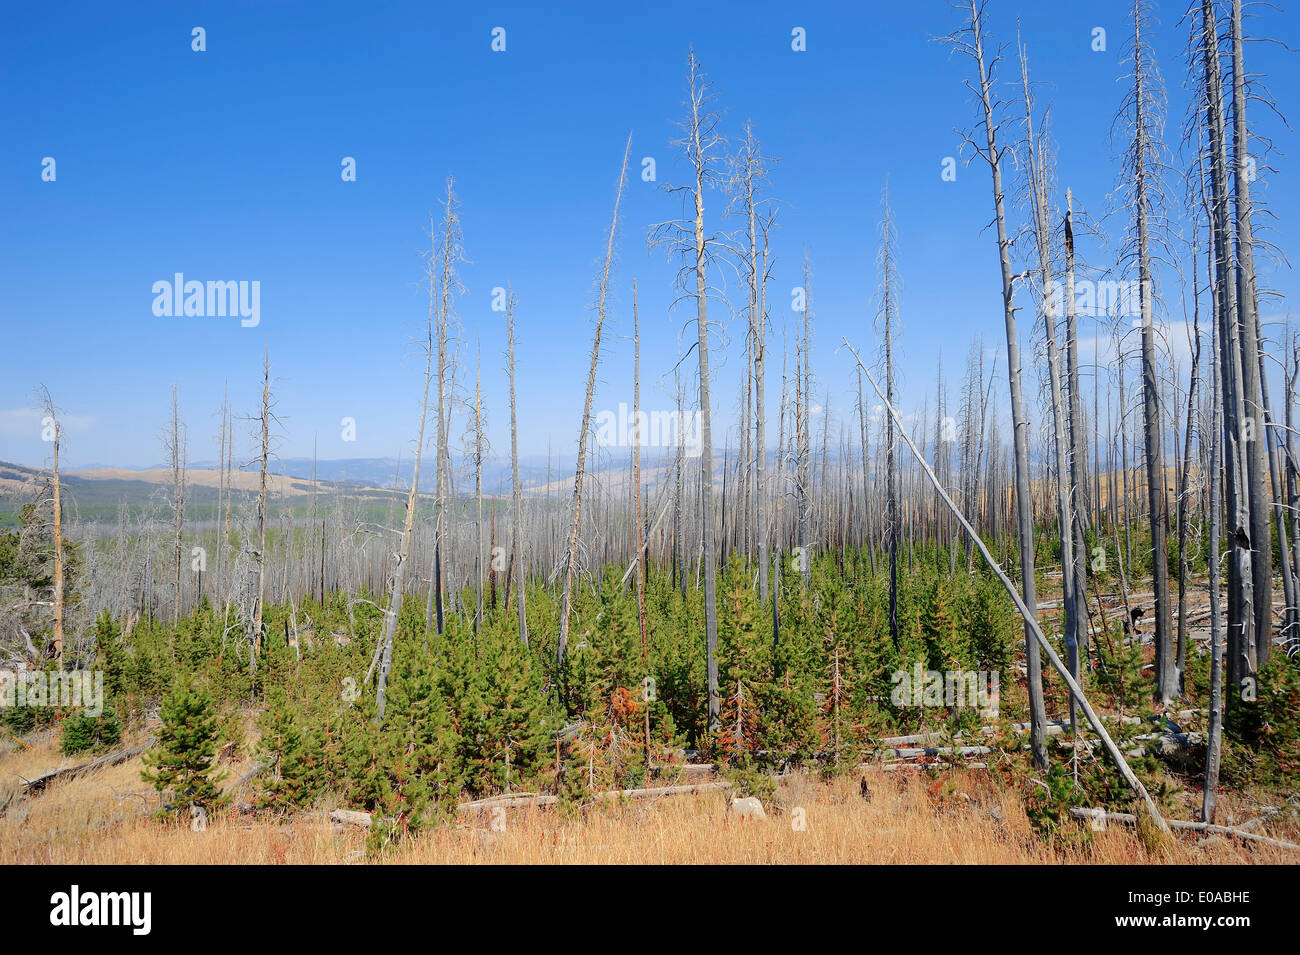 Coniferus foresta con morti e rinnovabile Coniferus alberi dopo gli incendi forestali, il Parco nazionale di Yellowstone, Wyoming USA Foto Stock